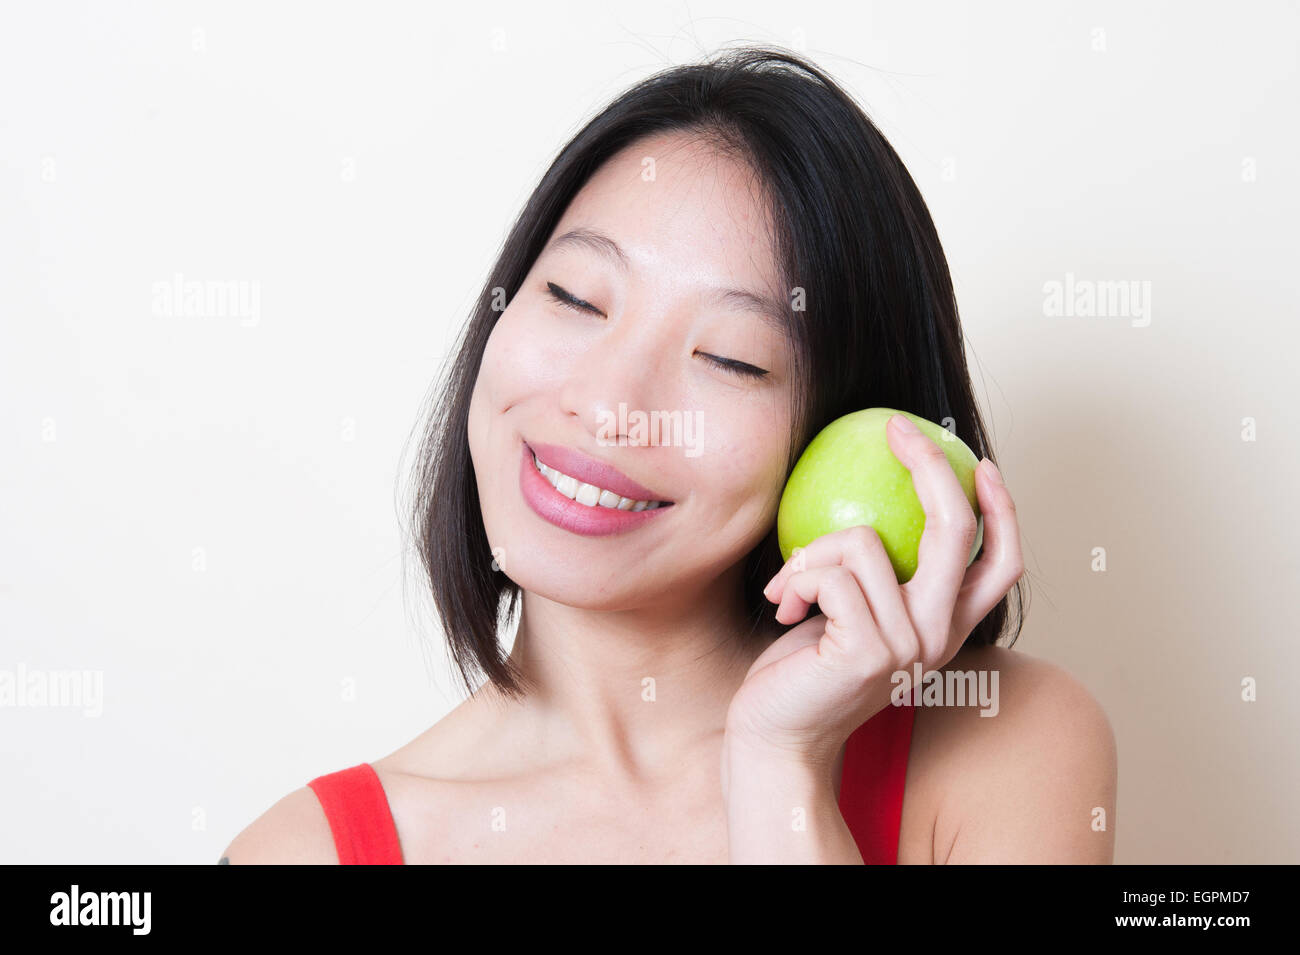 Belle jeune femme asiatique en robe rouge libre souriant de fermer les yeux, green apple sur sa main près de face sur fond blanc Banque D'Images